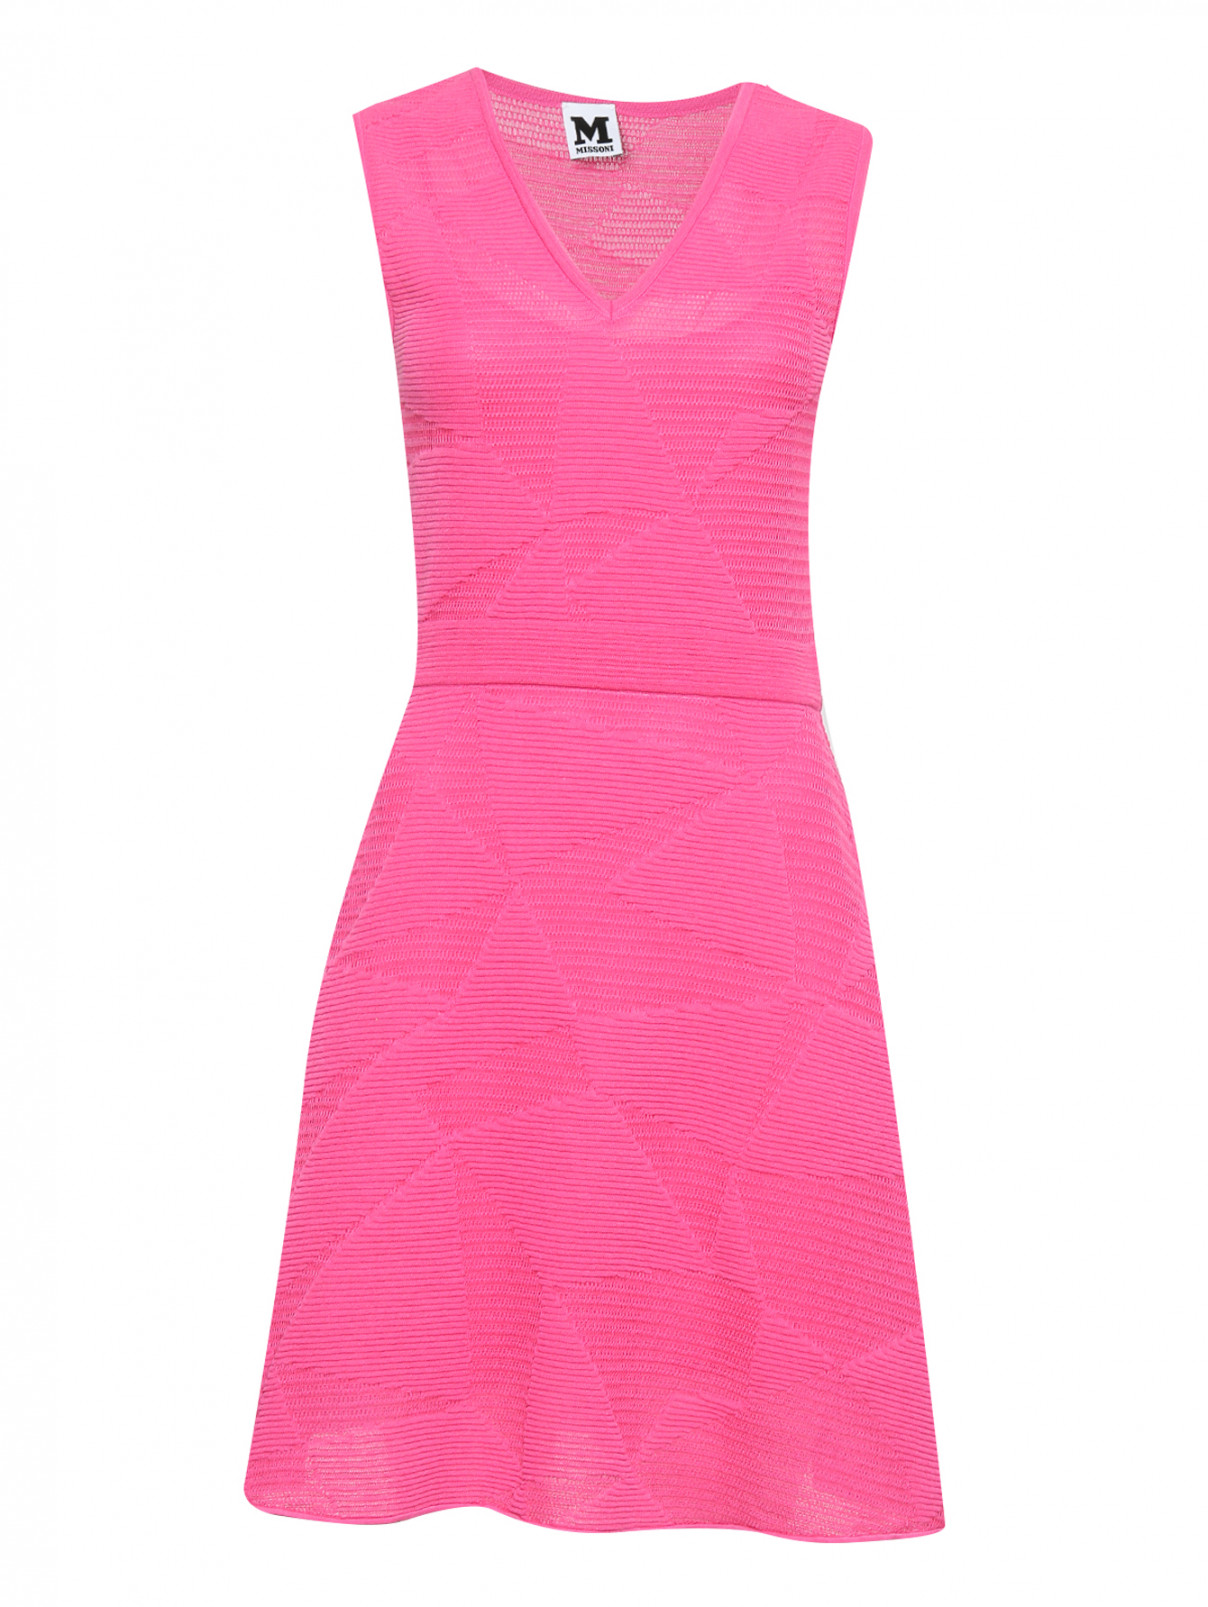 Трикотажное платье без рукавов M Missoni  –  Общий вид  – Цвет:  Розовый